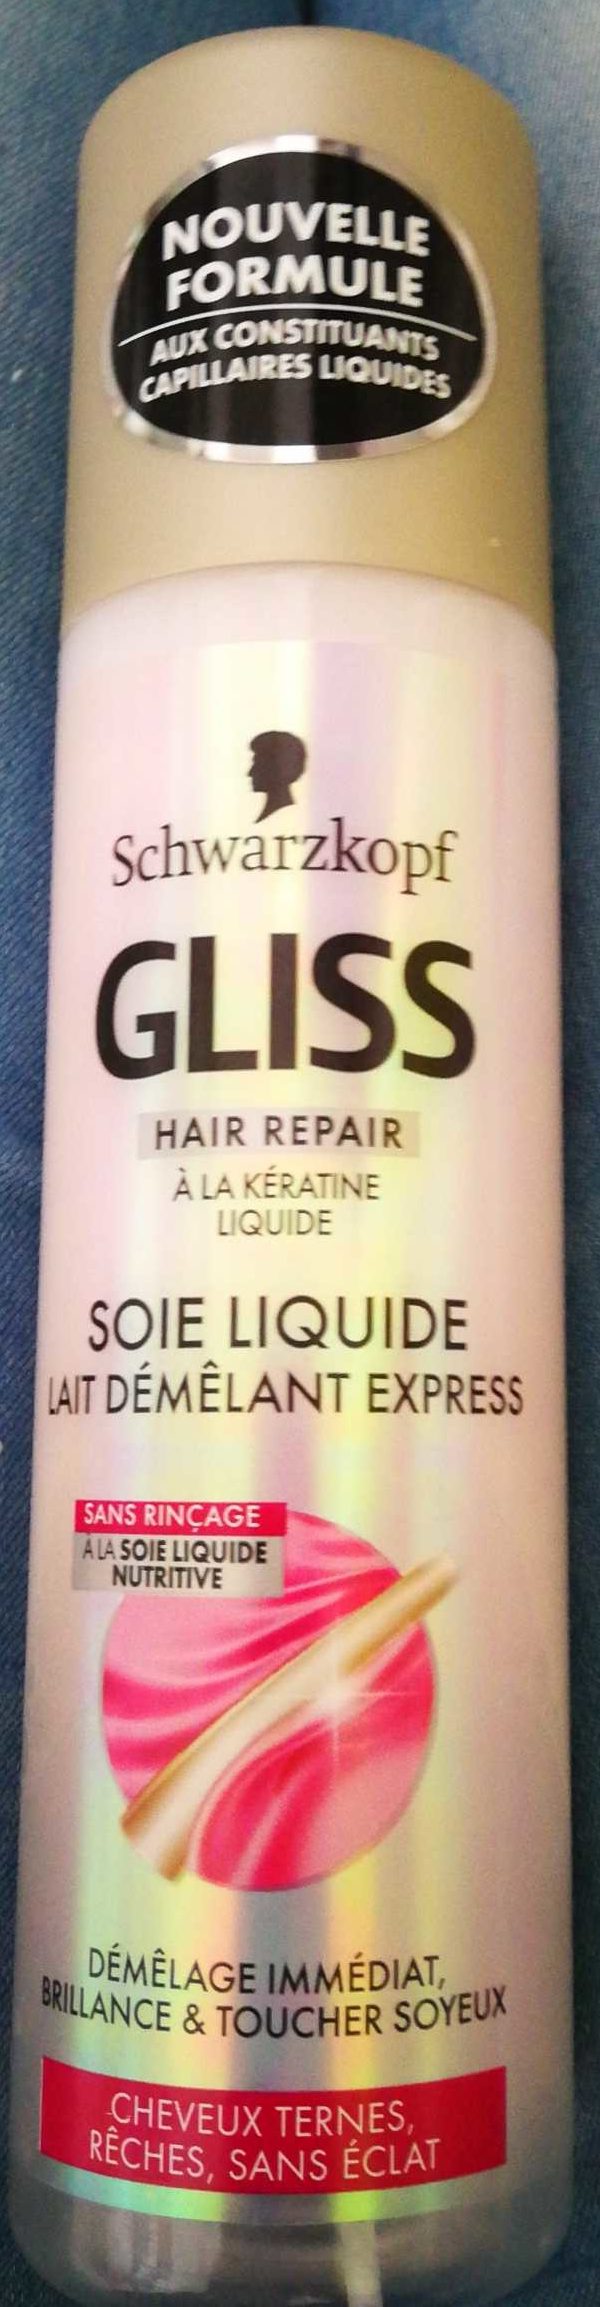 Gliss Soie liquide - 製品 - fr